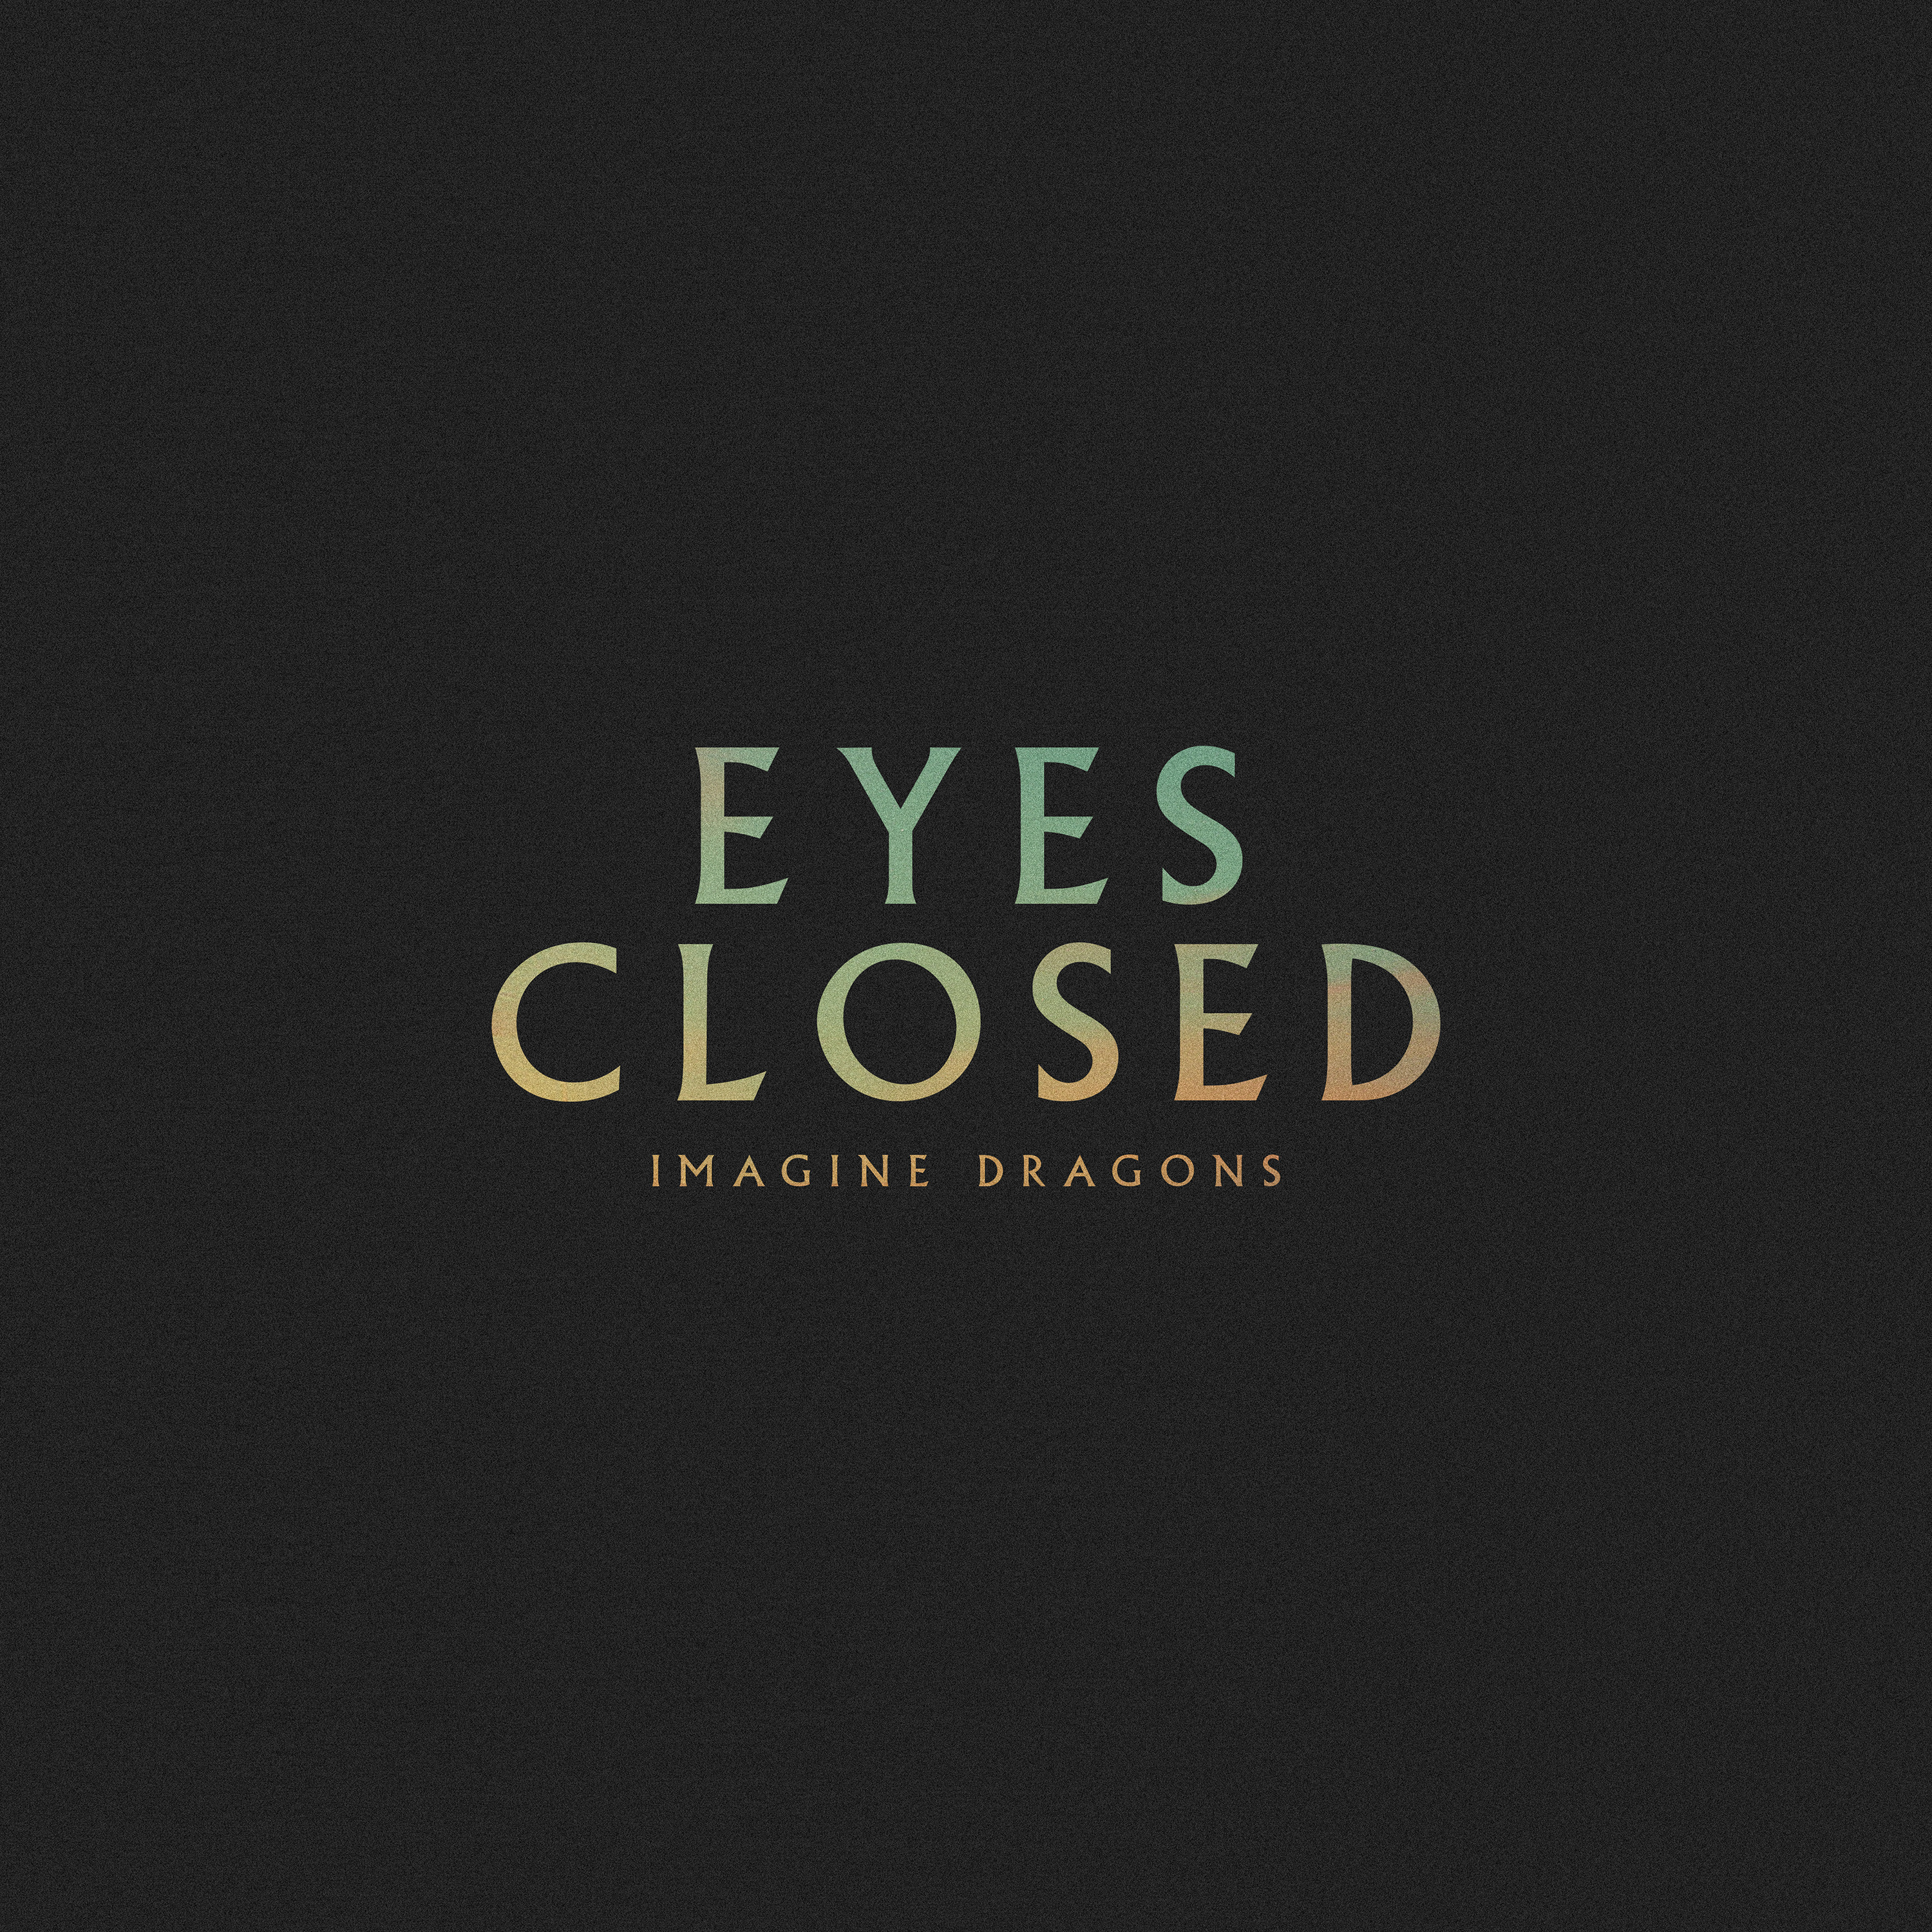 Eyes Closed Imagine Dragons Album Art